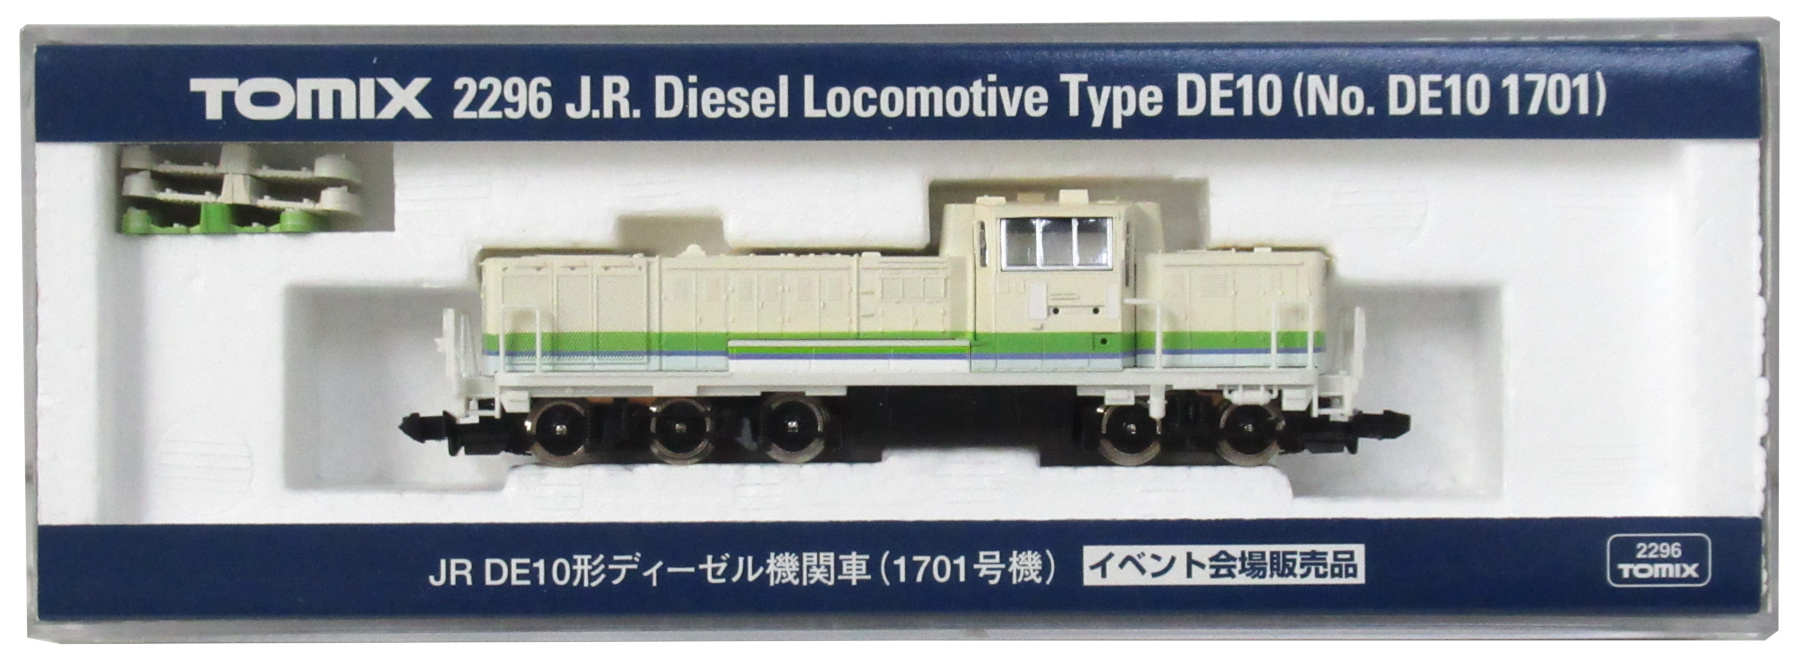 2296 JR DE10形(1701号機)